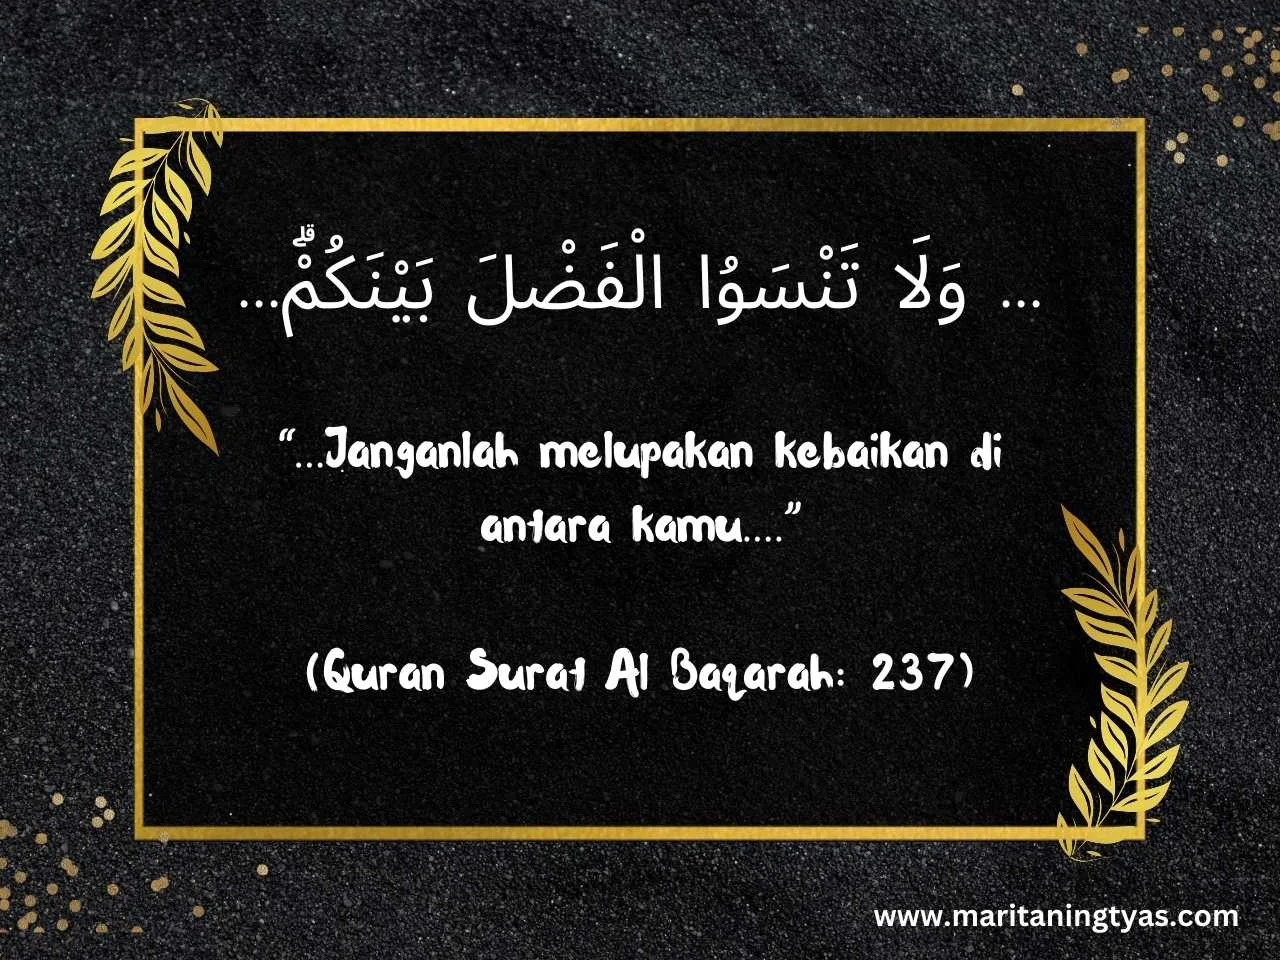 Quran Surat Al Baqarah: 237